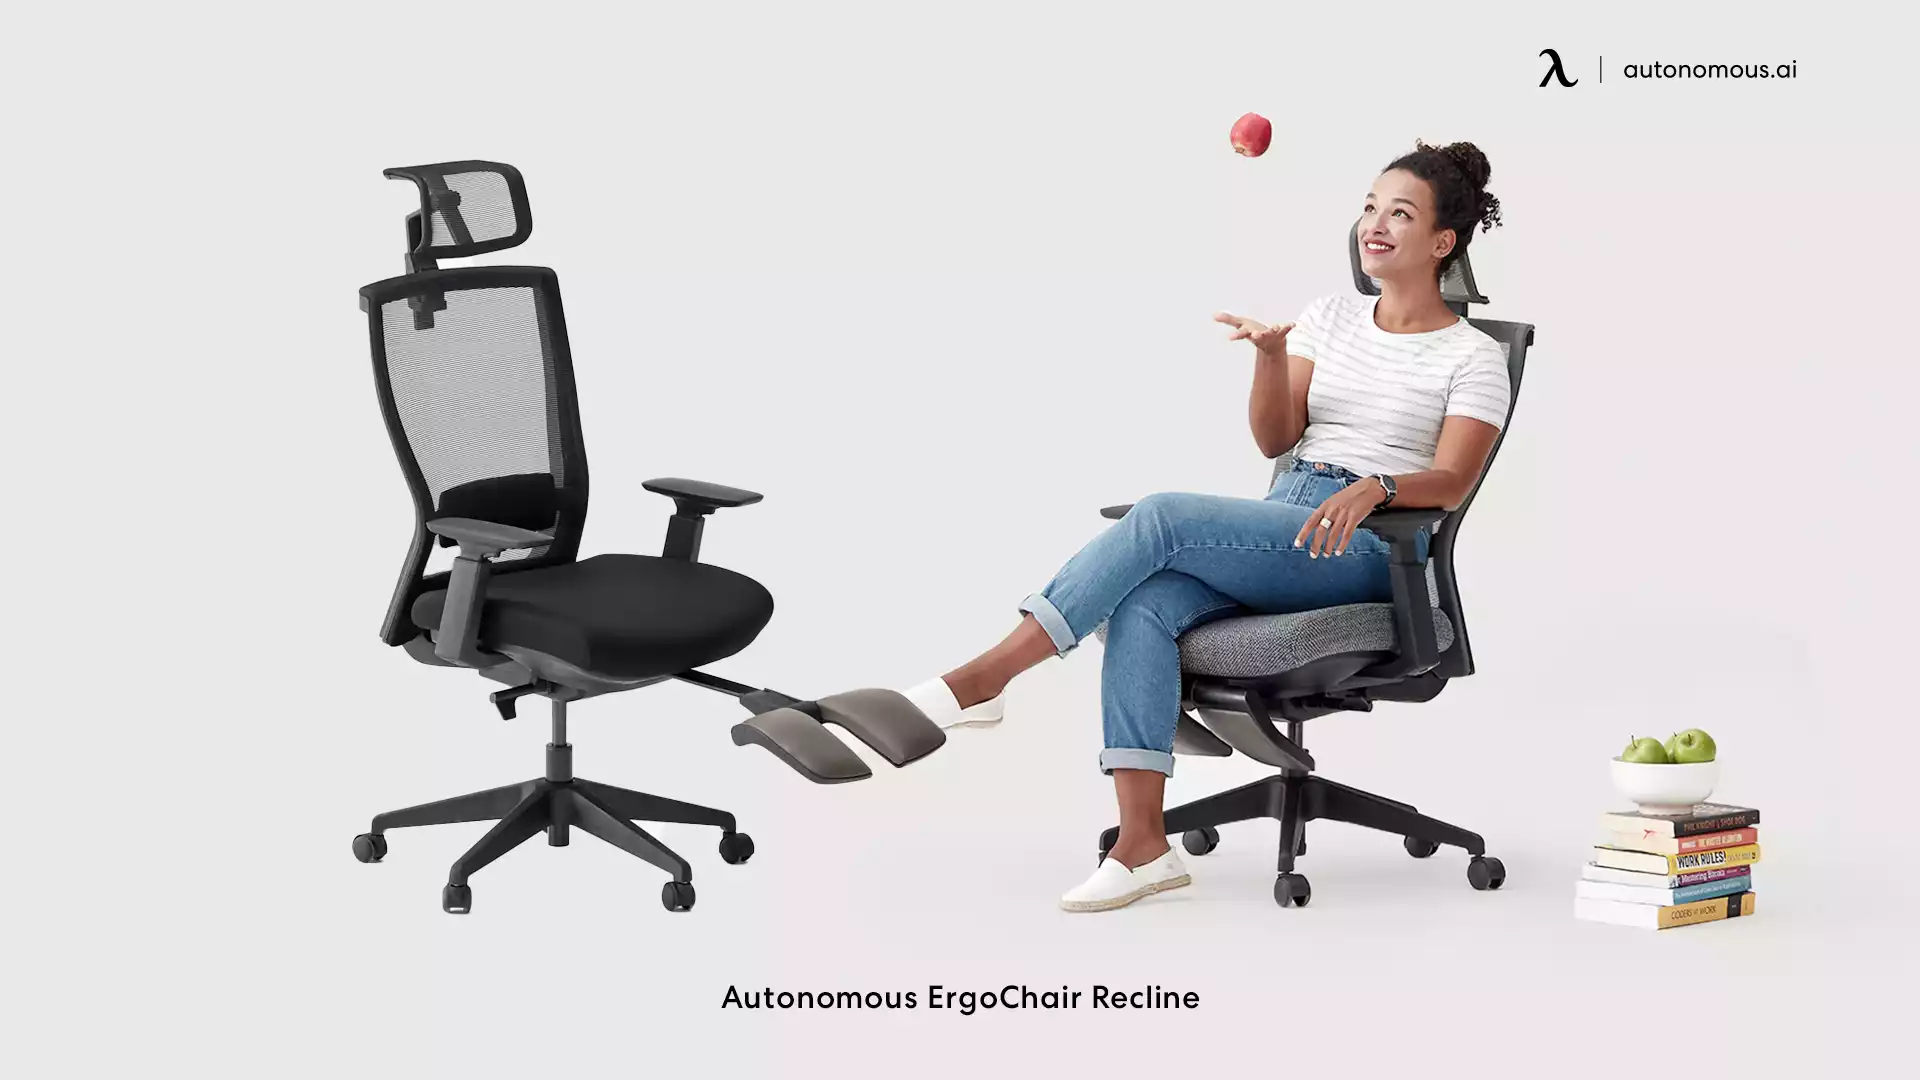 ErgoChair Recline cushy office chair